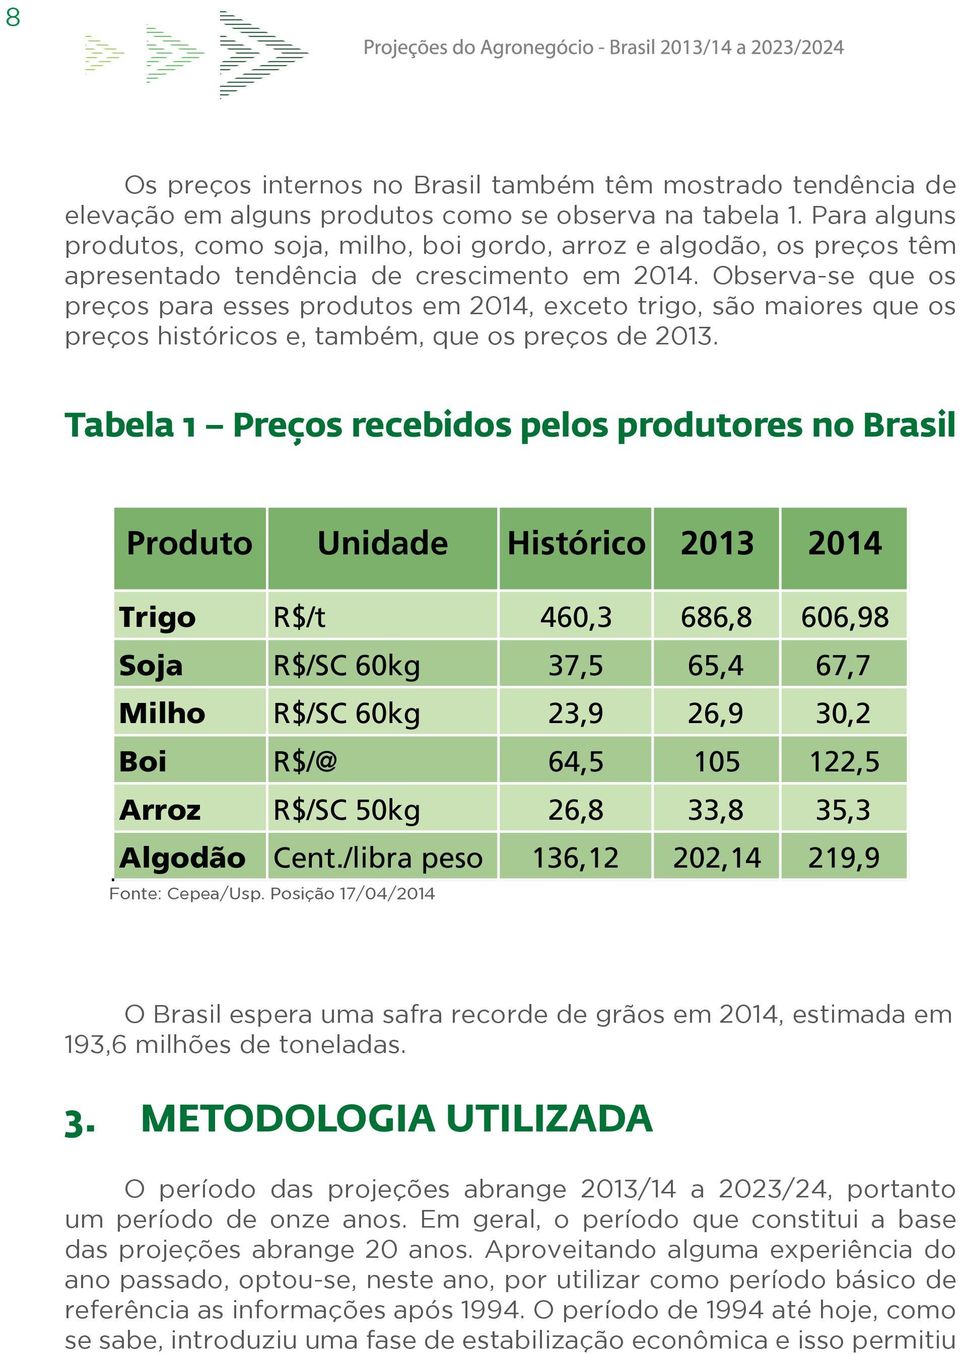 Observa-se que os preços para esses produtos em 2014, exceto trigo, são maiores que os preços históricos e, também, que os preços de 2013.